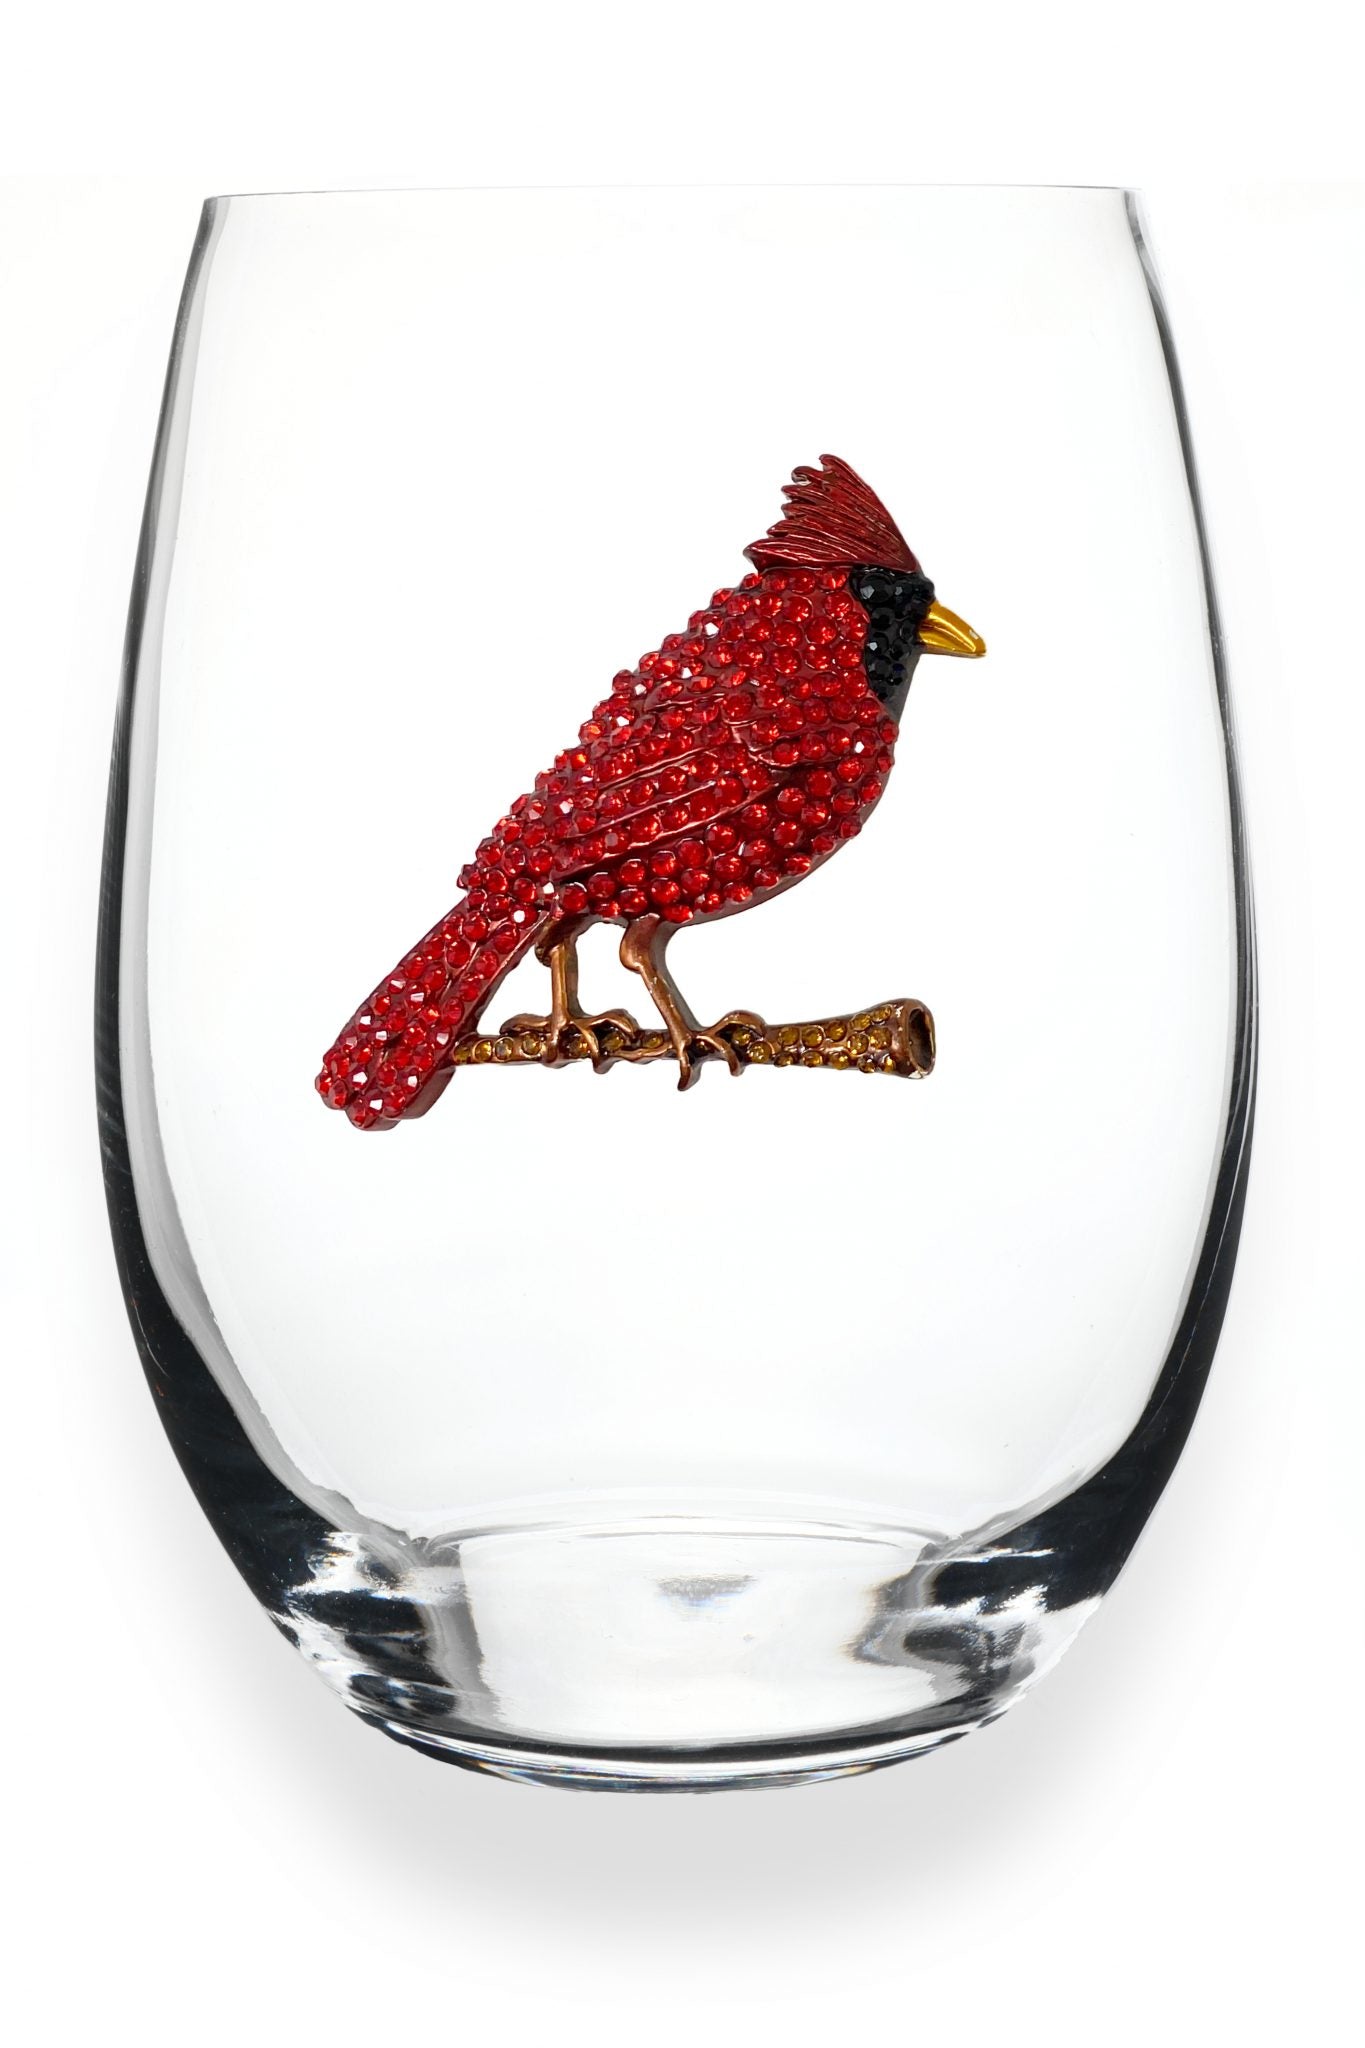 Jeweled Stemless Wine Glass - Cardinal